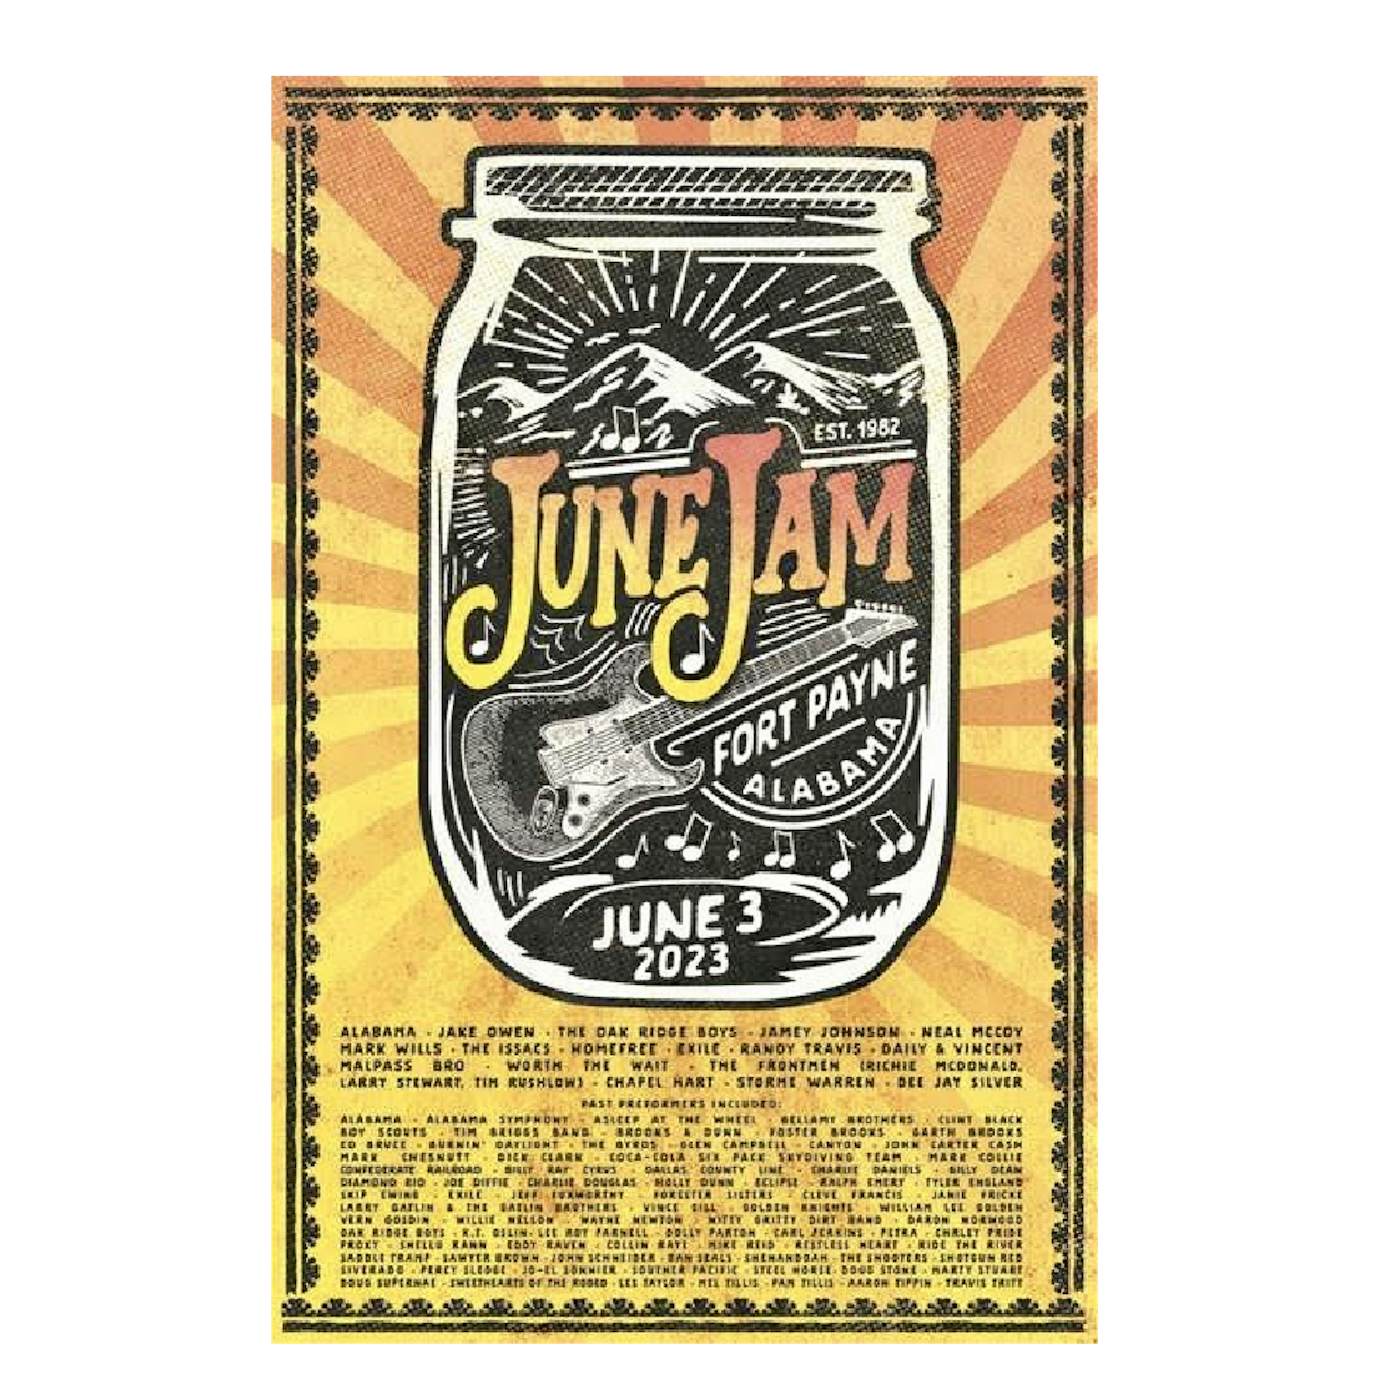 Alabama June Jam Poster